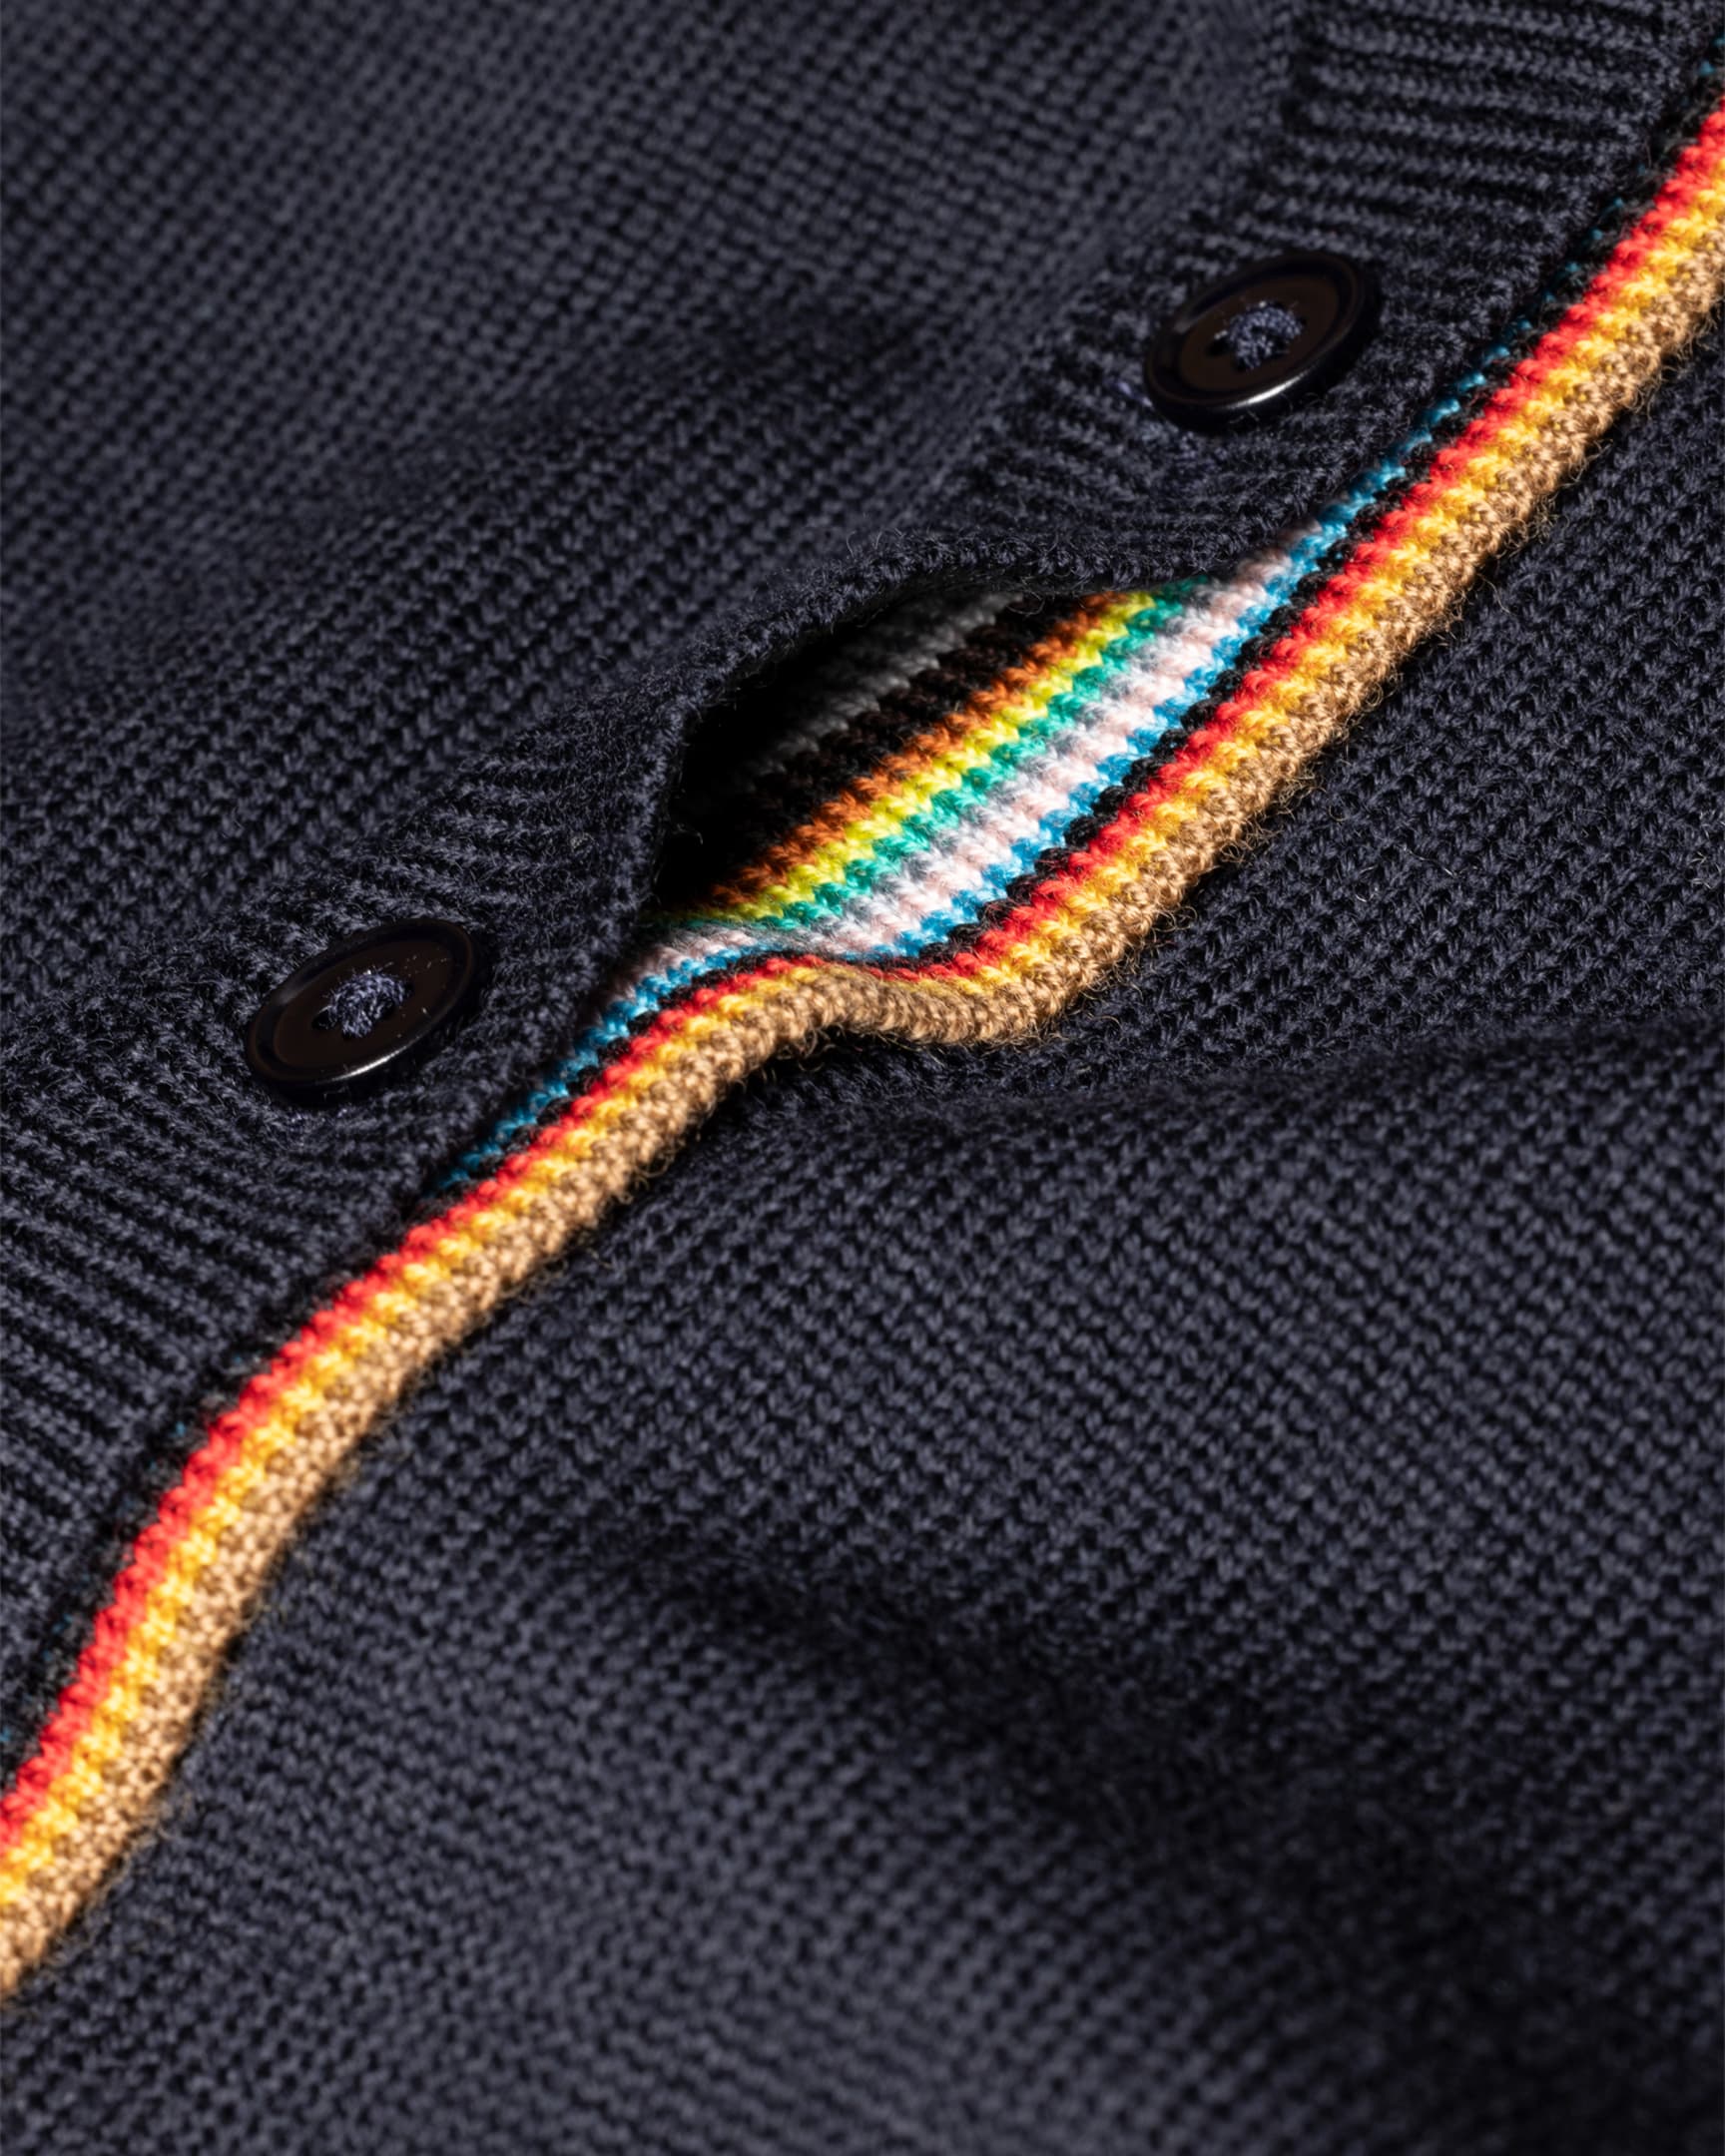 Detail View - Women's Navy Merino Wool 'Signature Stripe' Cardigan Paul Smith